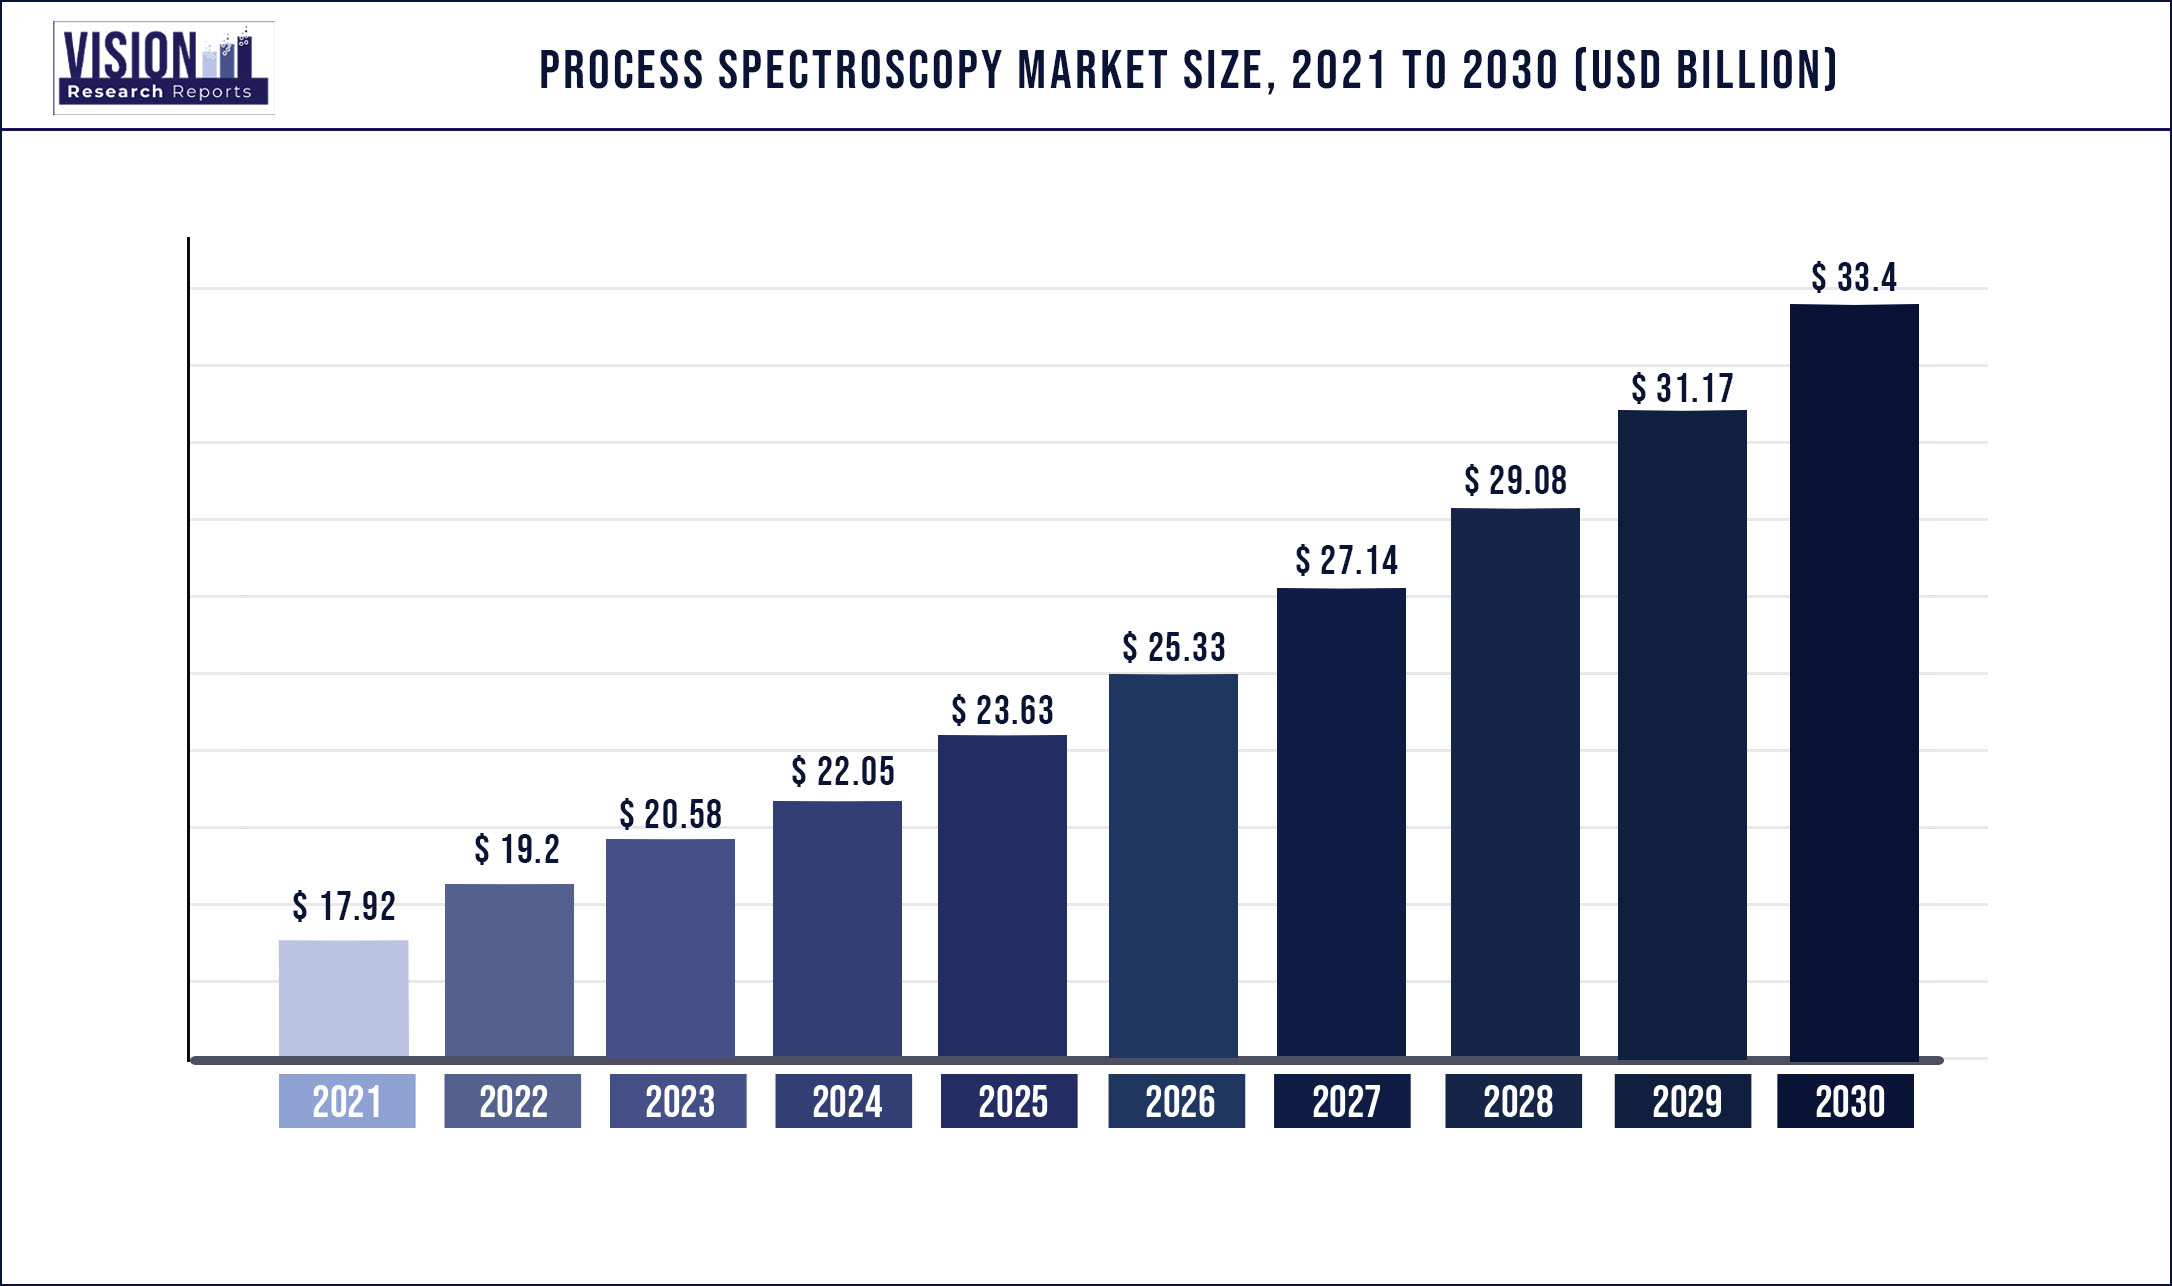 Process Spectroscopy Market Size 2021 to 2030